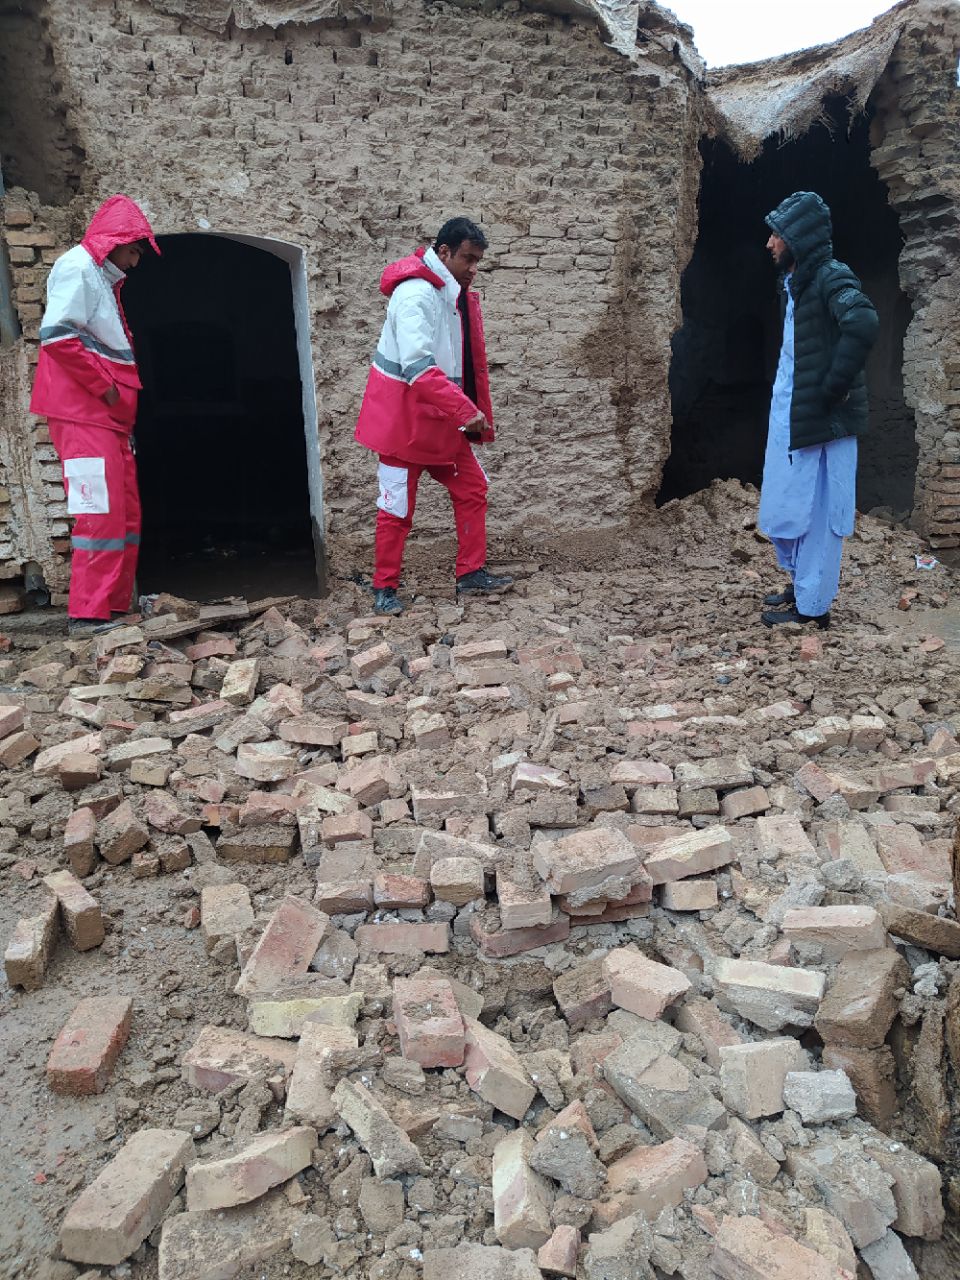  تصاویر از سیل سیستان و بلوچستان و کمک رسانی هلال احمر به سیل زدگان